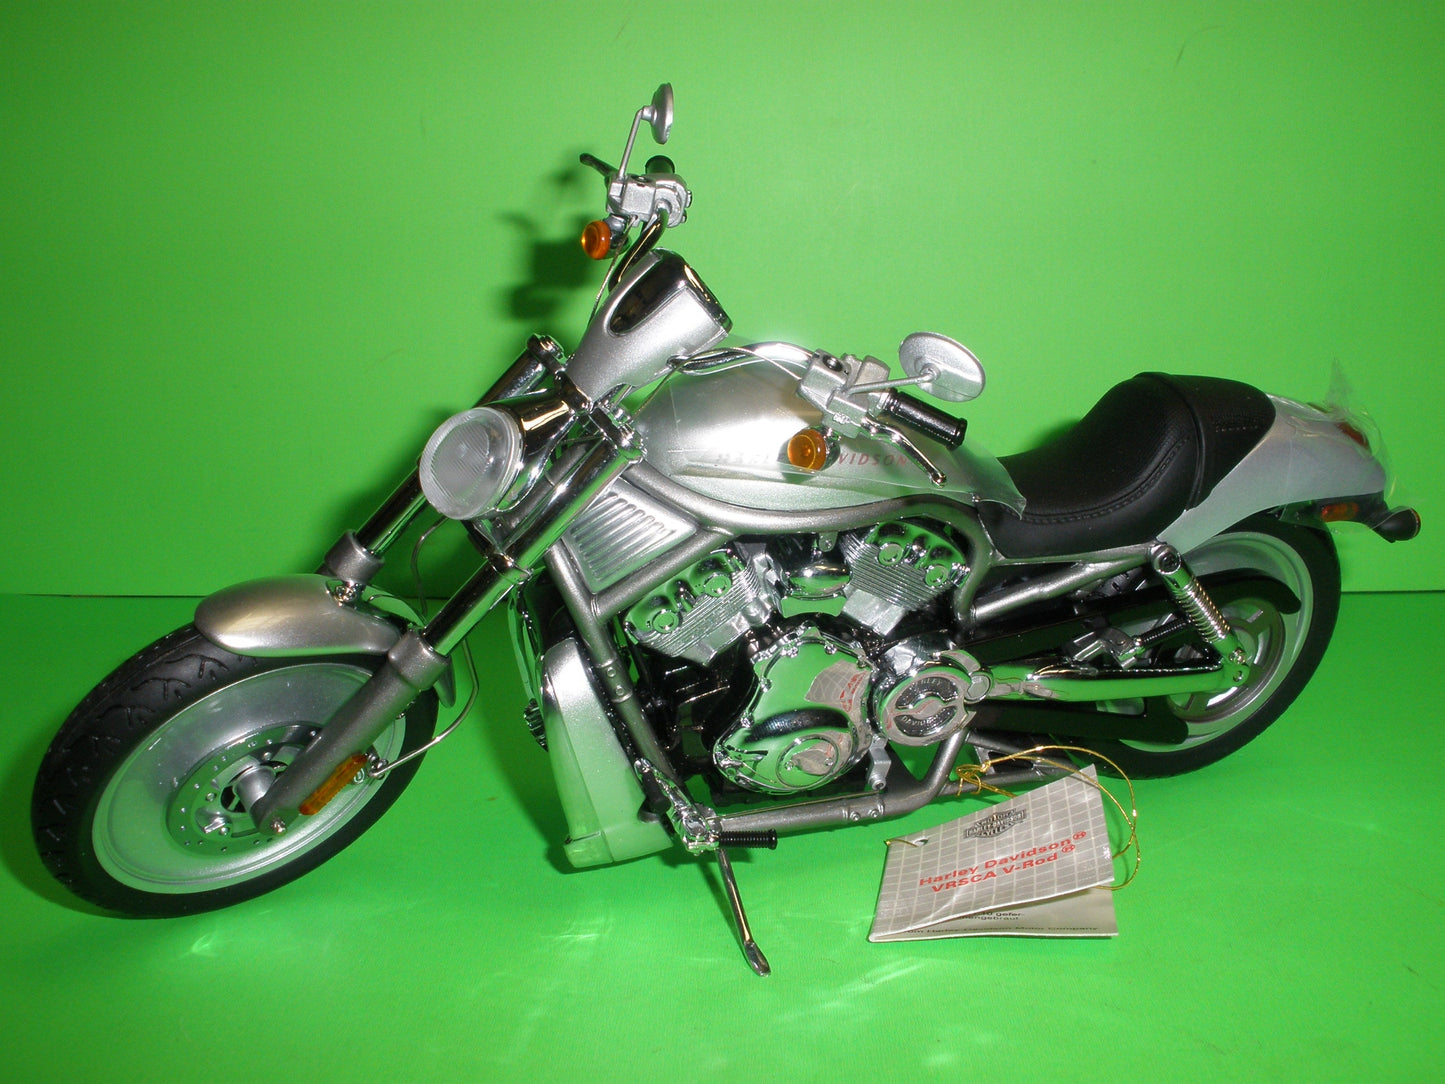 Harley Davidson V-Rod Motorcycle - B11B990